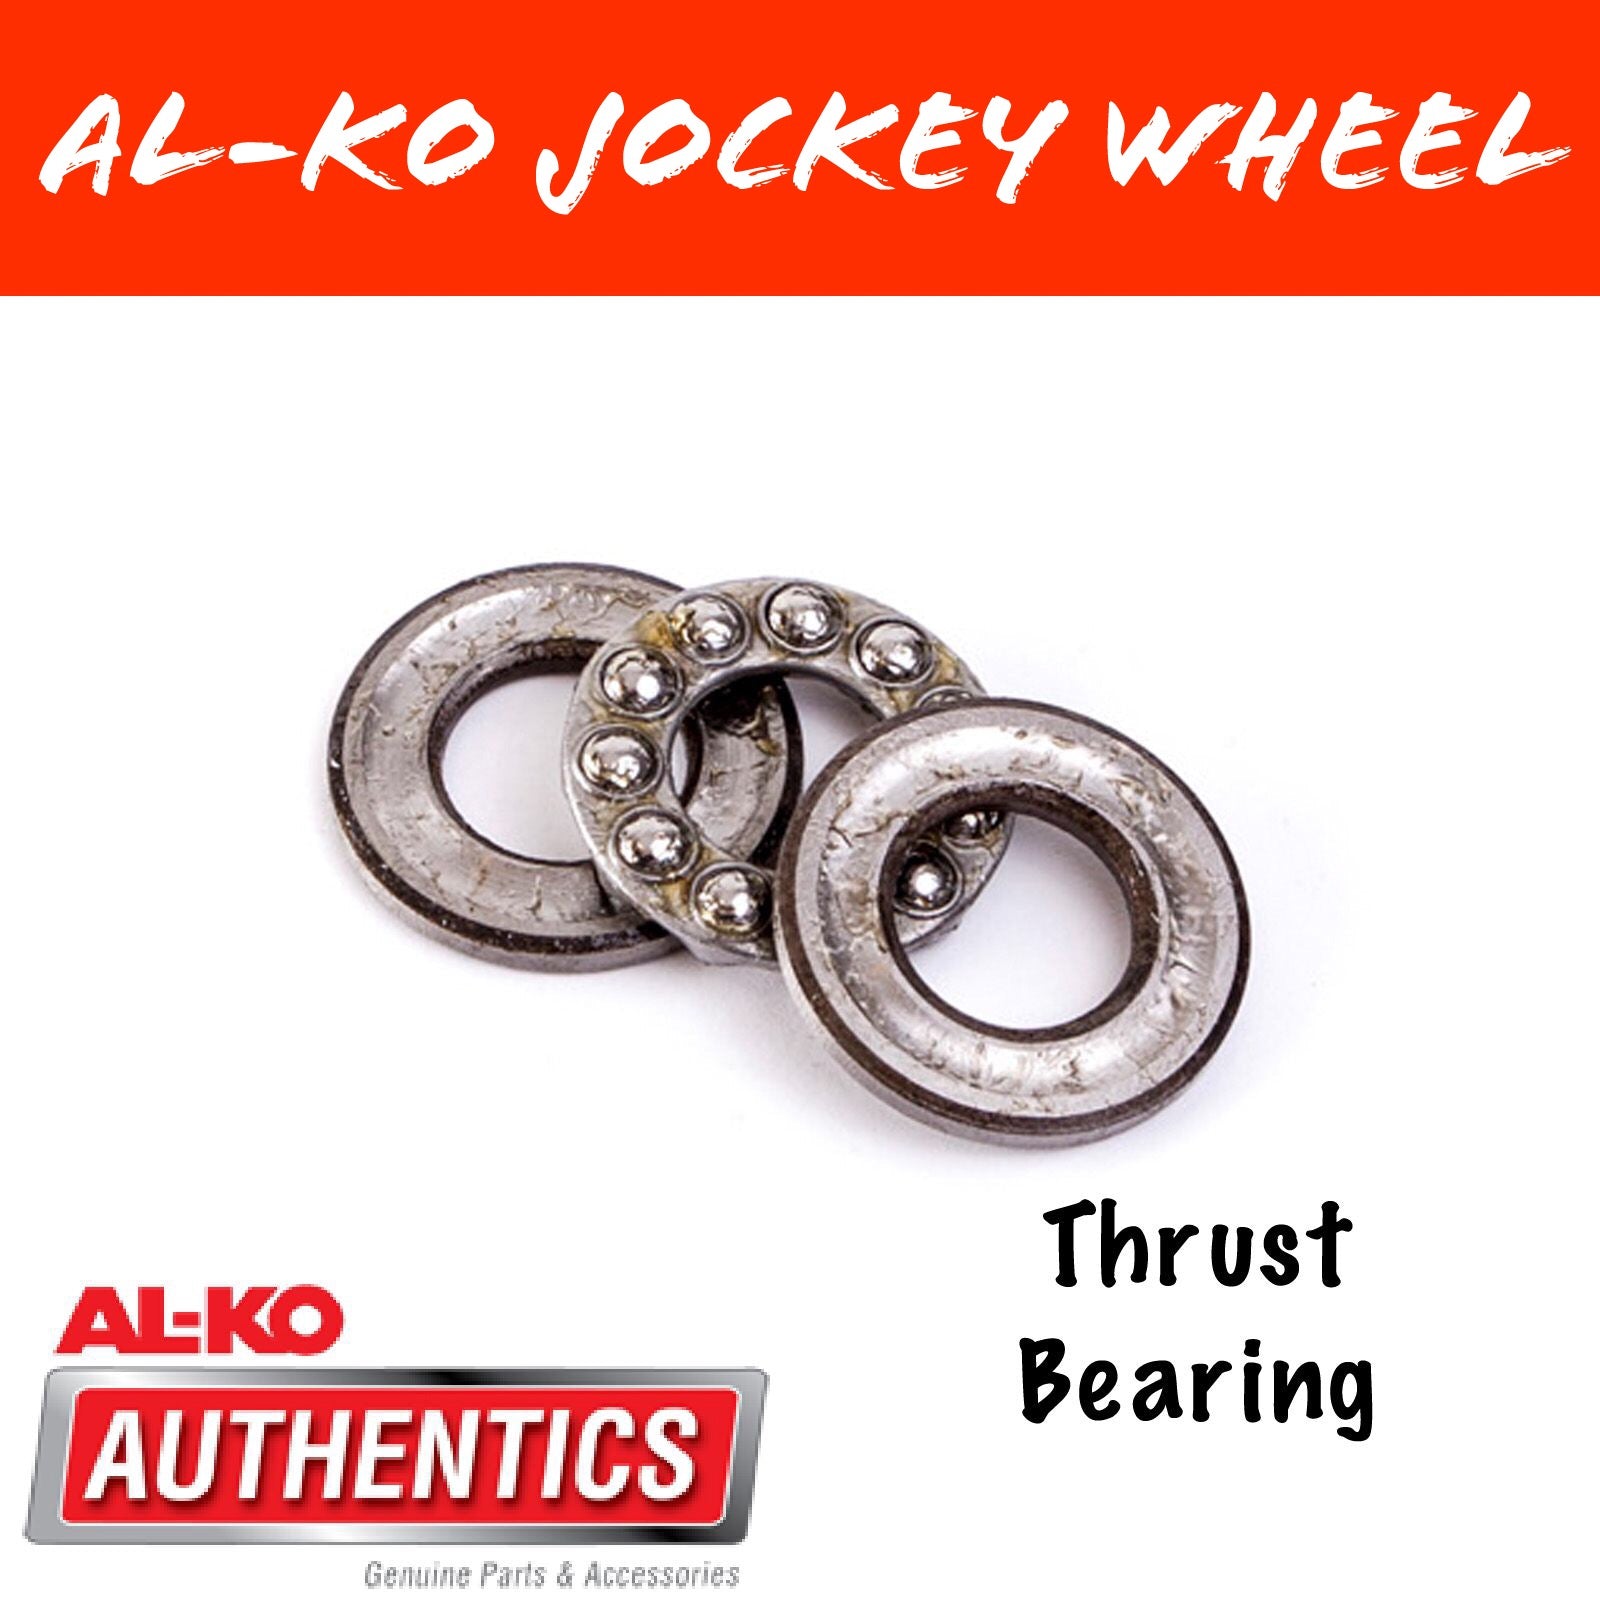 AL-KO Thrust Bearing Replacement Kit